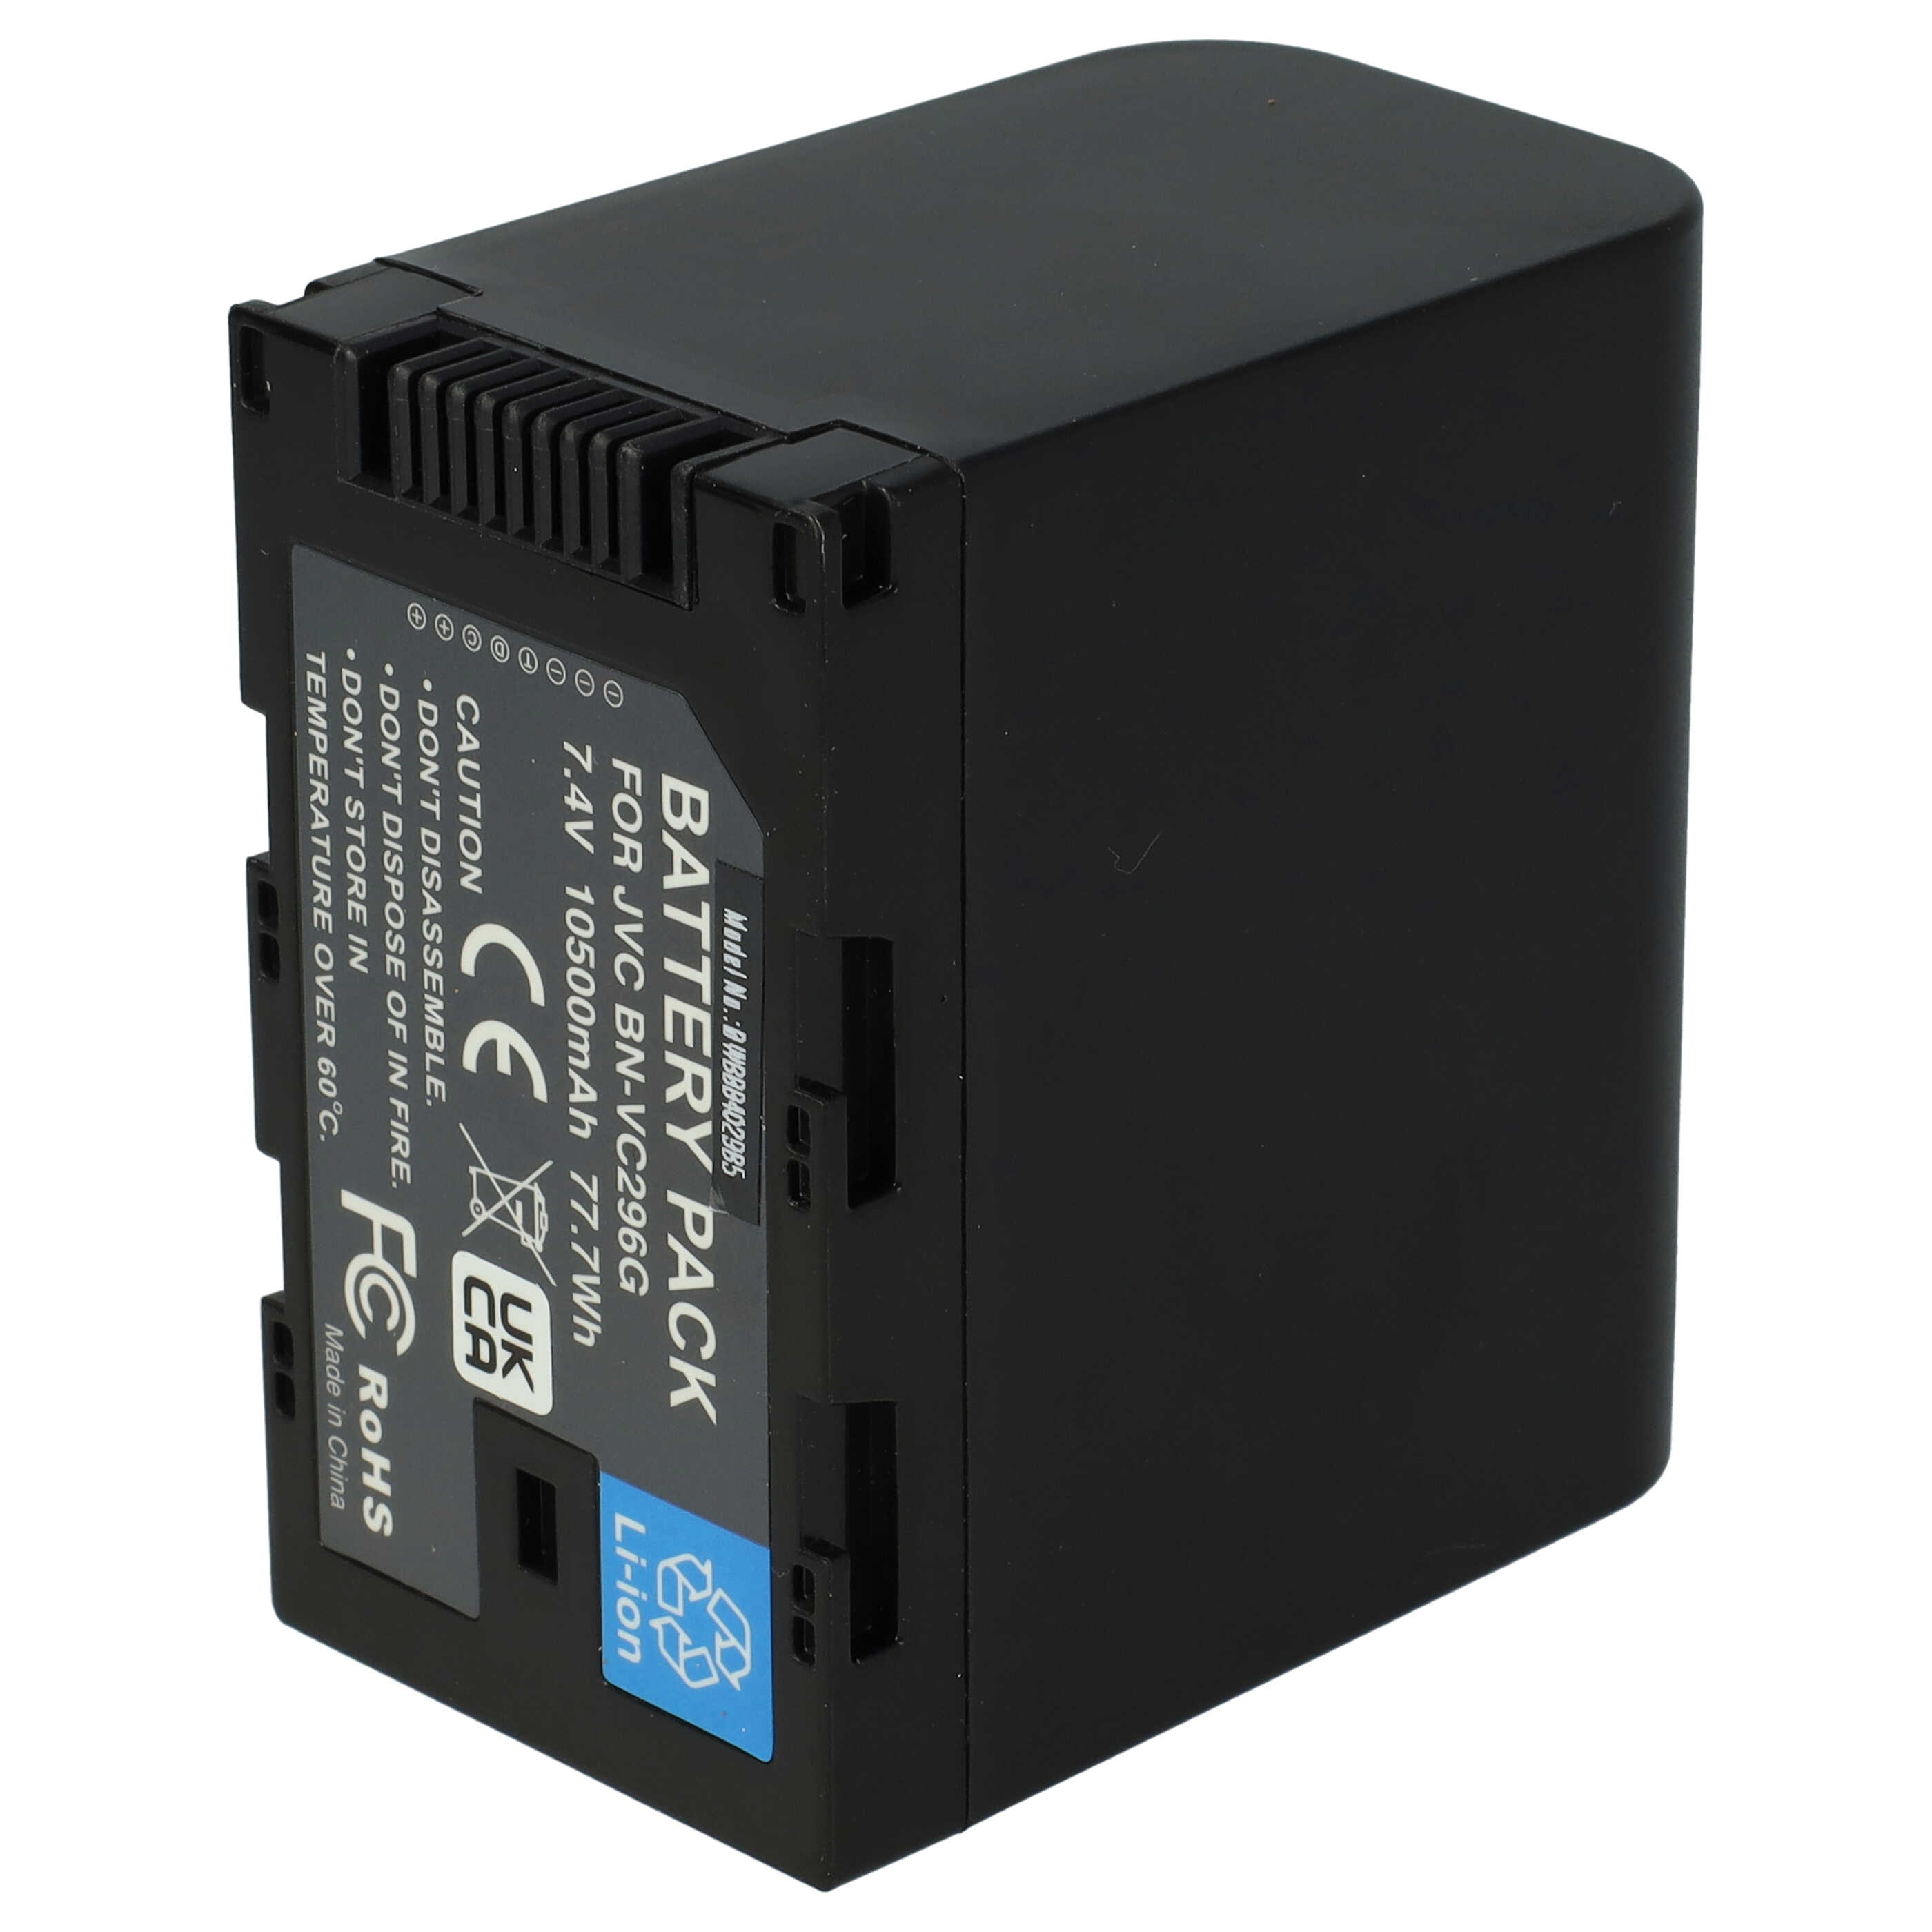 Akumulator do kamery cyfrowej / wideo zamiennik JVC BN-VC298G, BN-VC296G, BN-VC264G - 10500 mAh 7,4 V Li-Ion